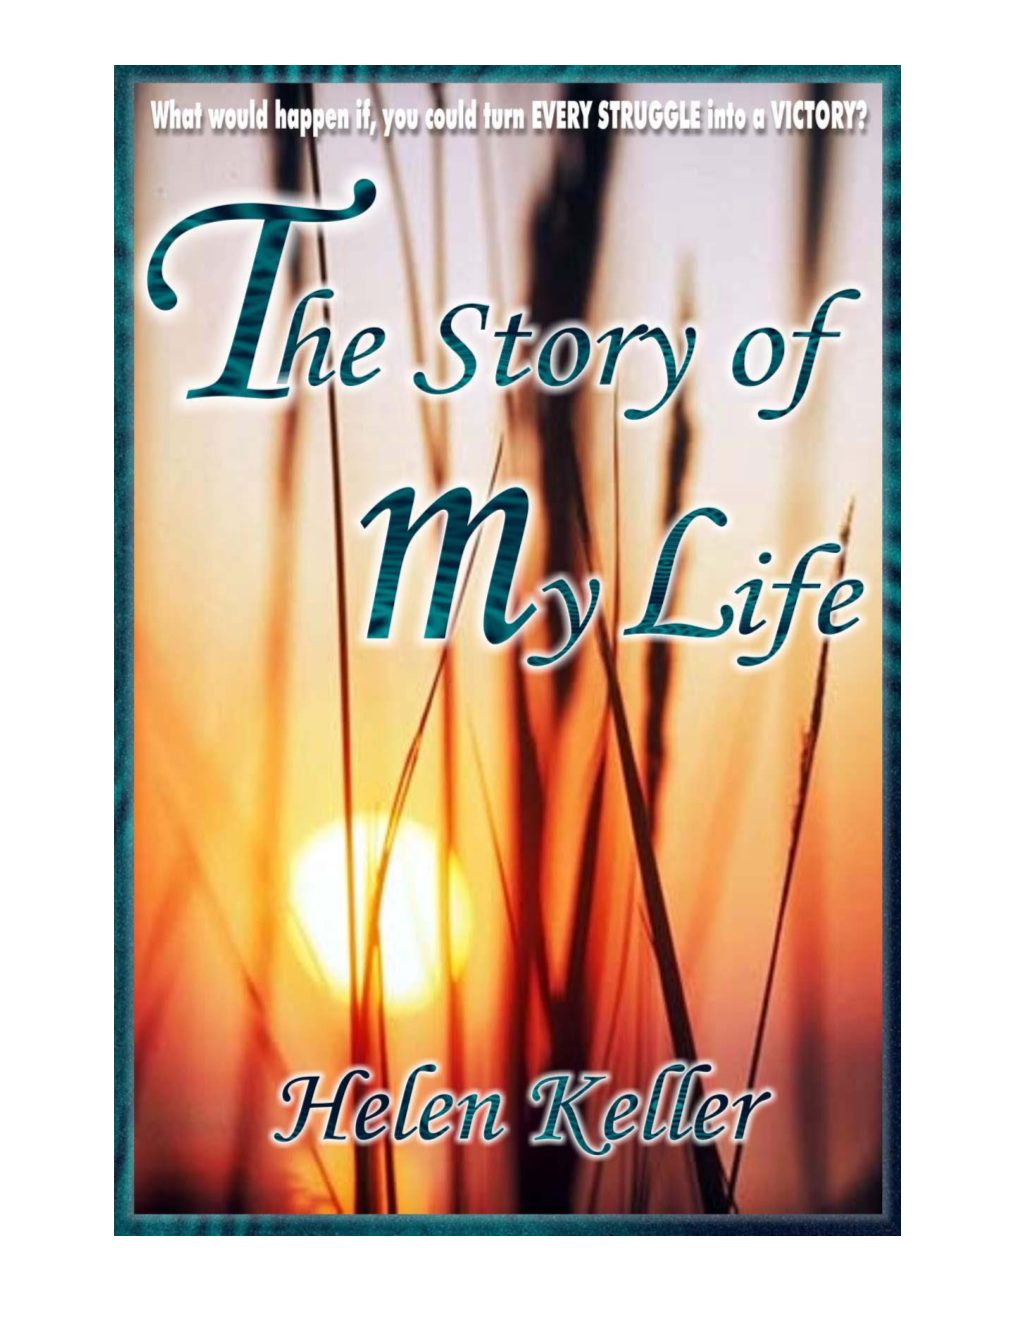 Helen Keller's Autobiography